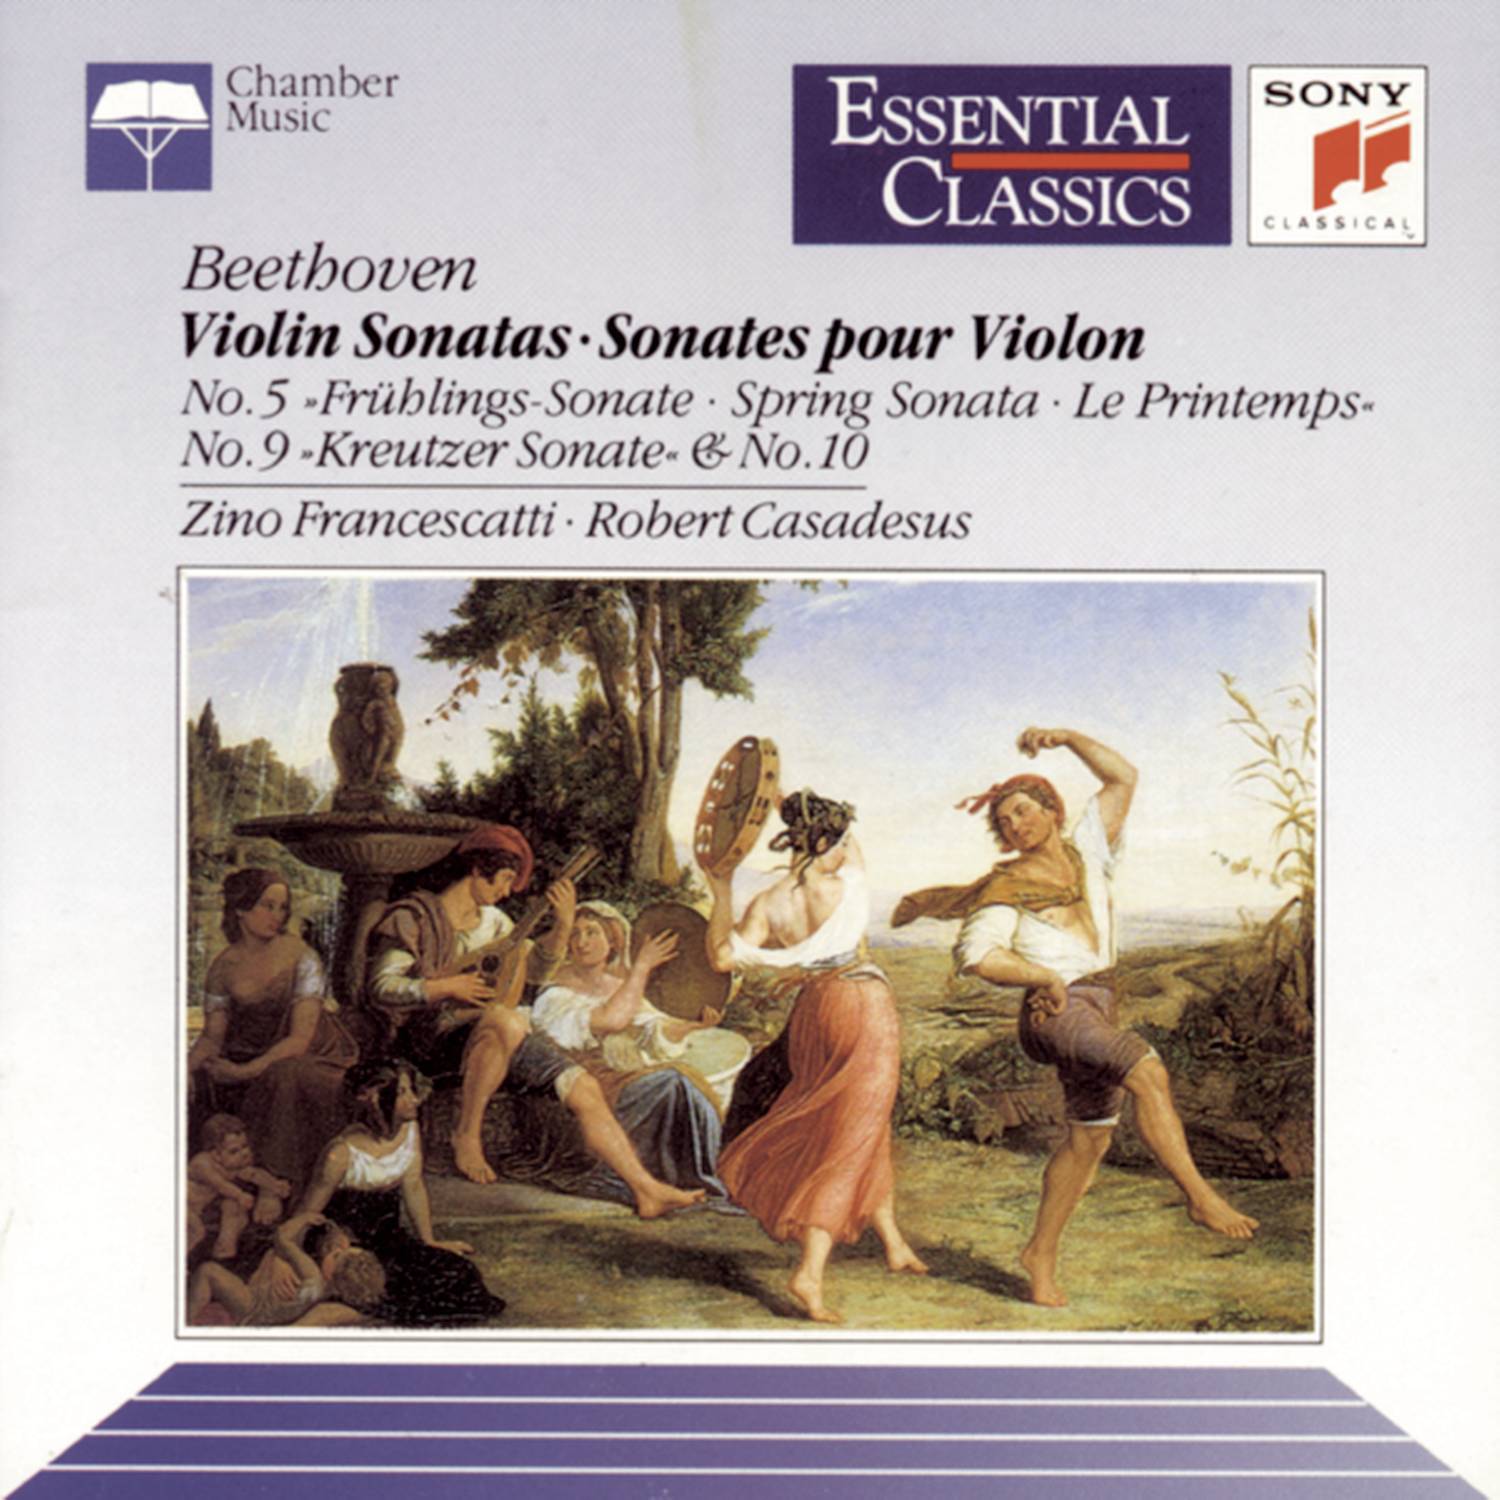 Sonata No. 10 in G Major for Violin and Piano, Op. 96: I.  Allegro moderato